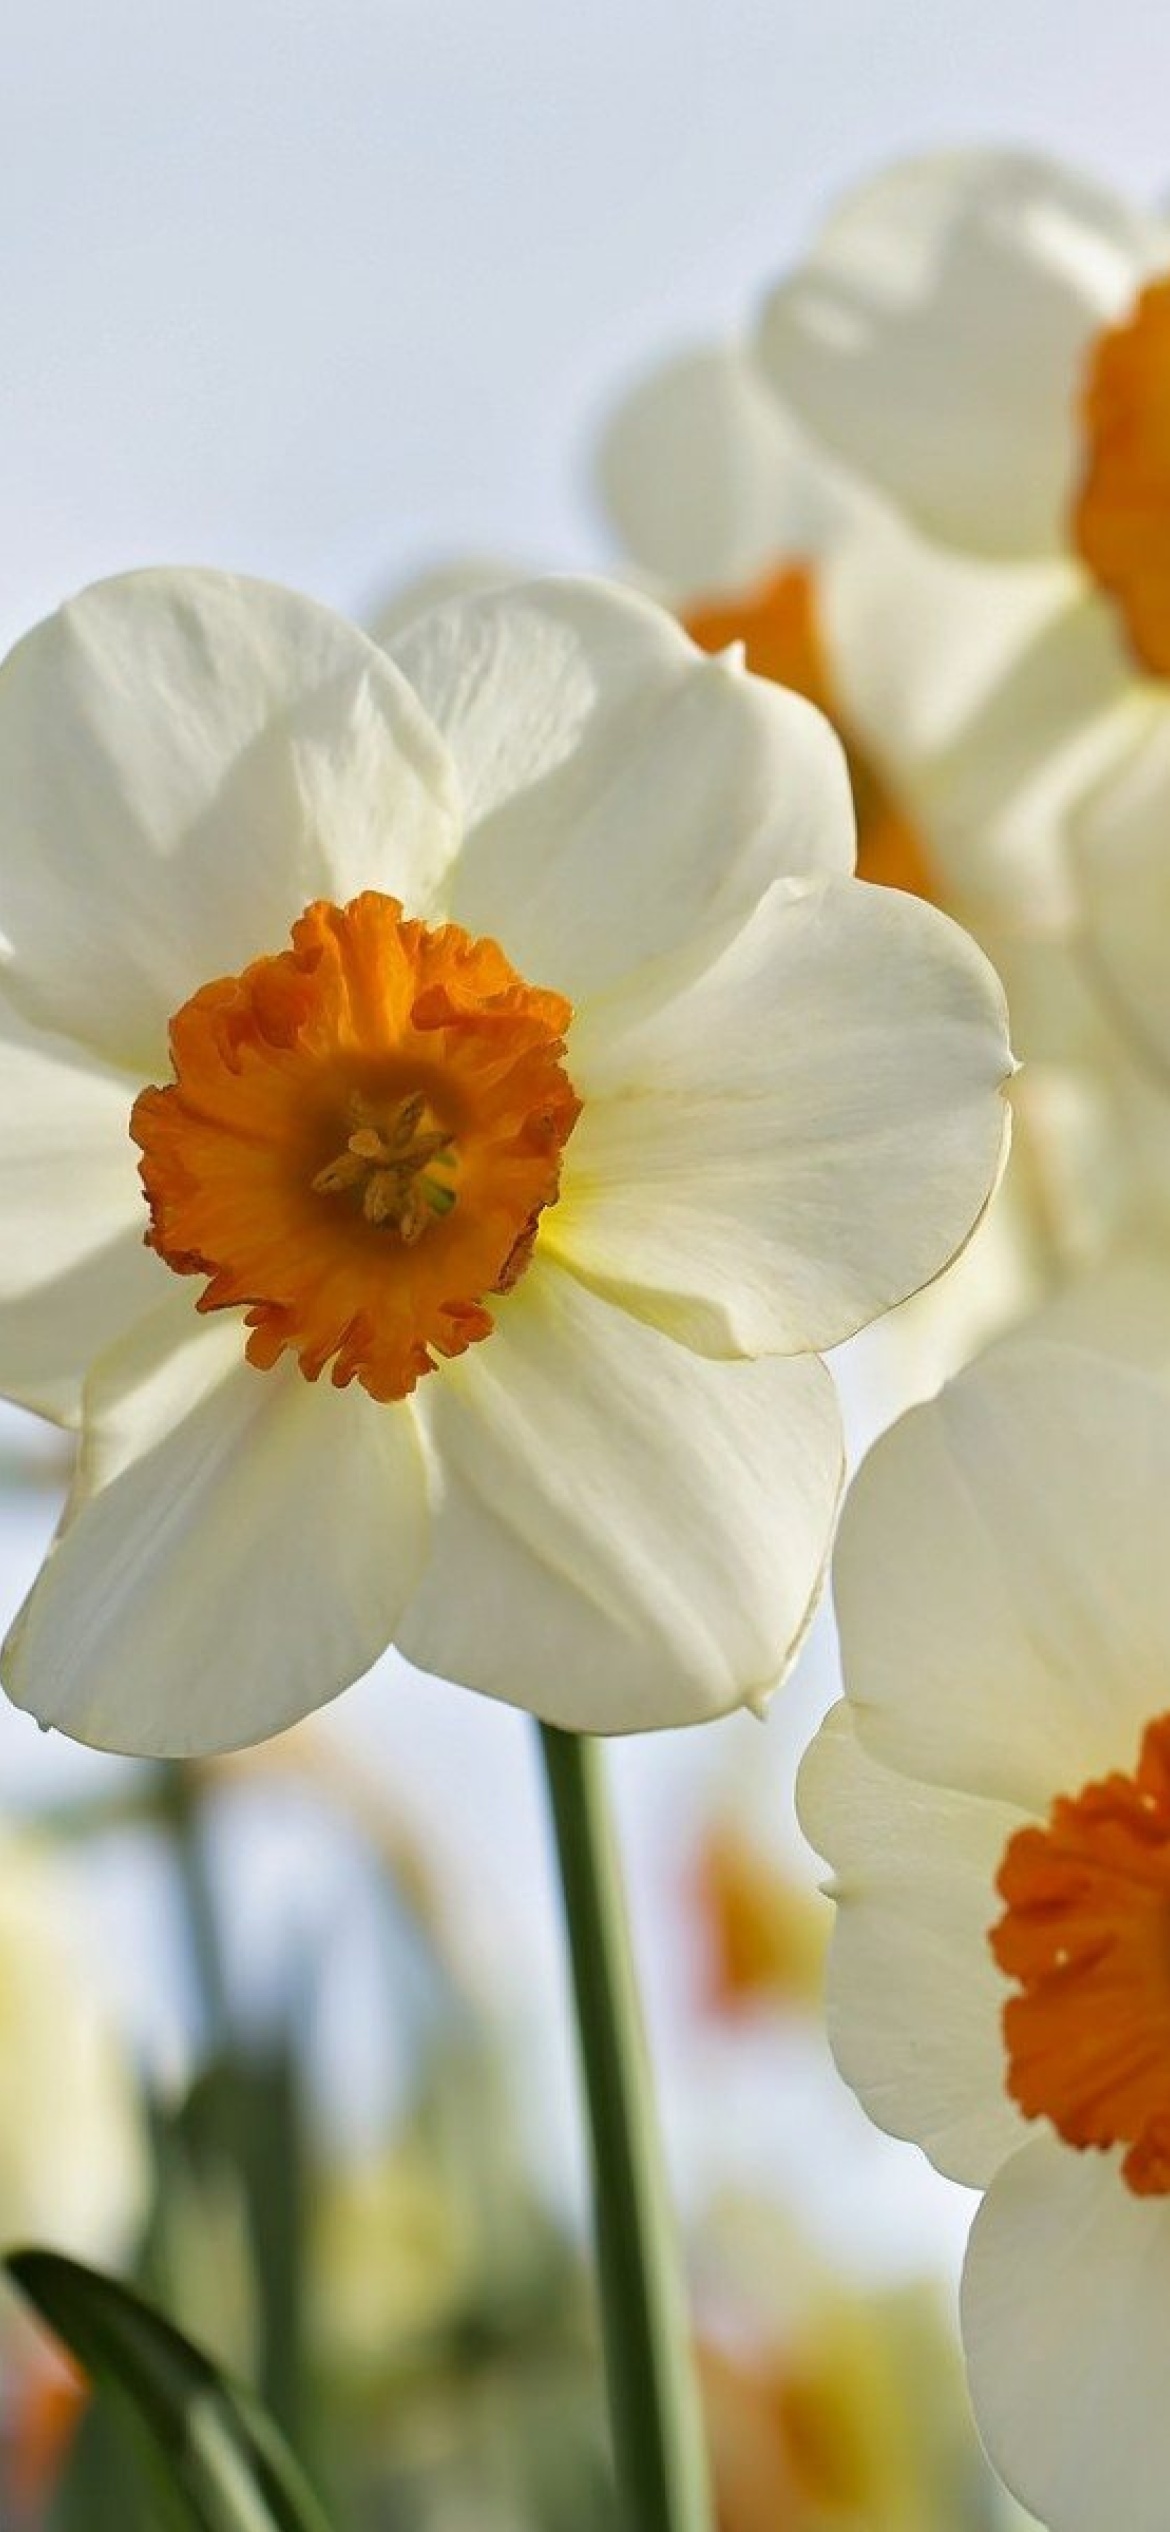 Обои Daffodils Spring 1170x2532